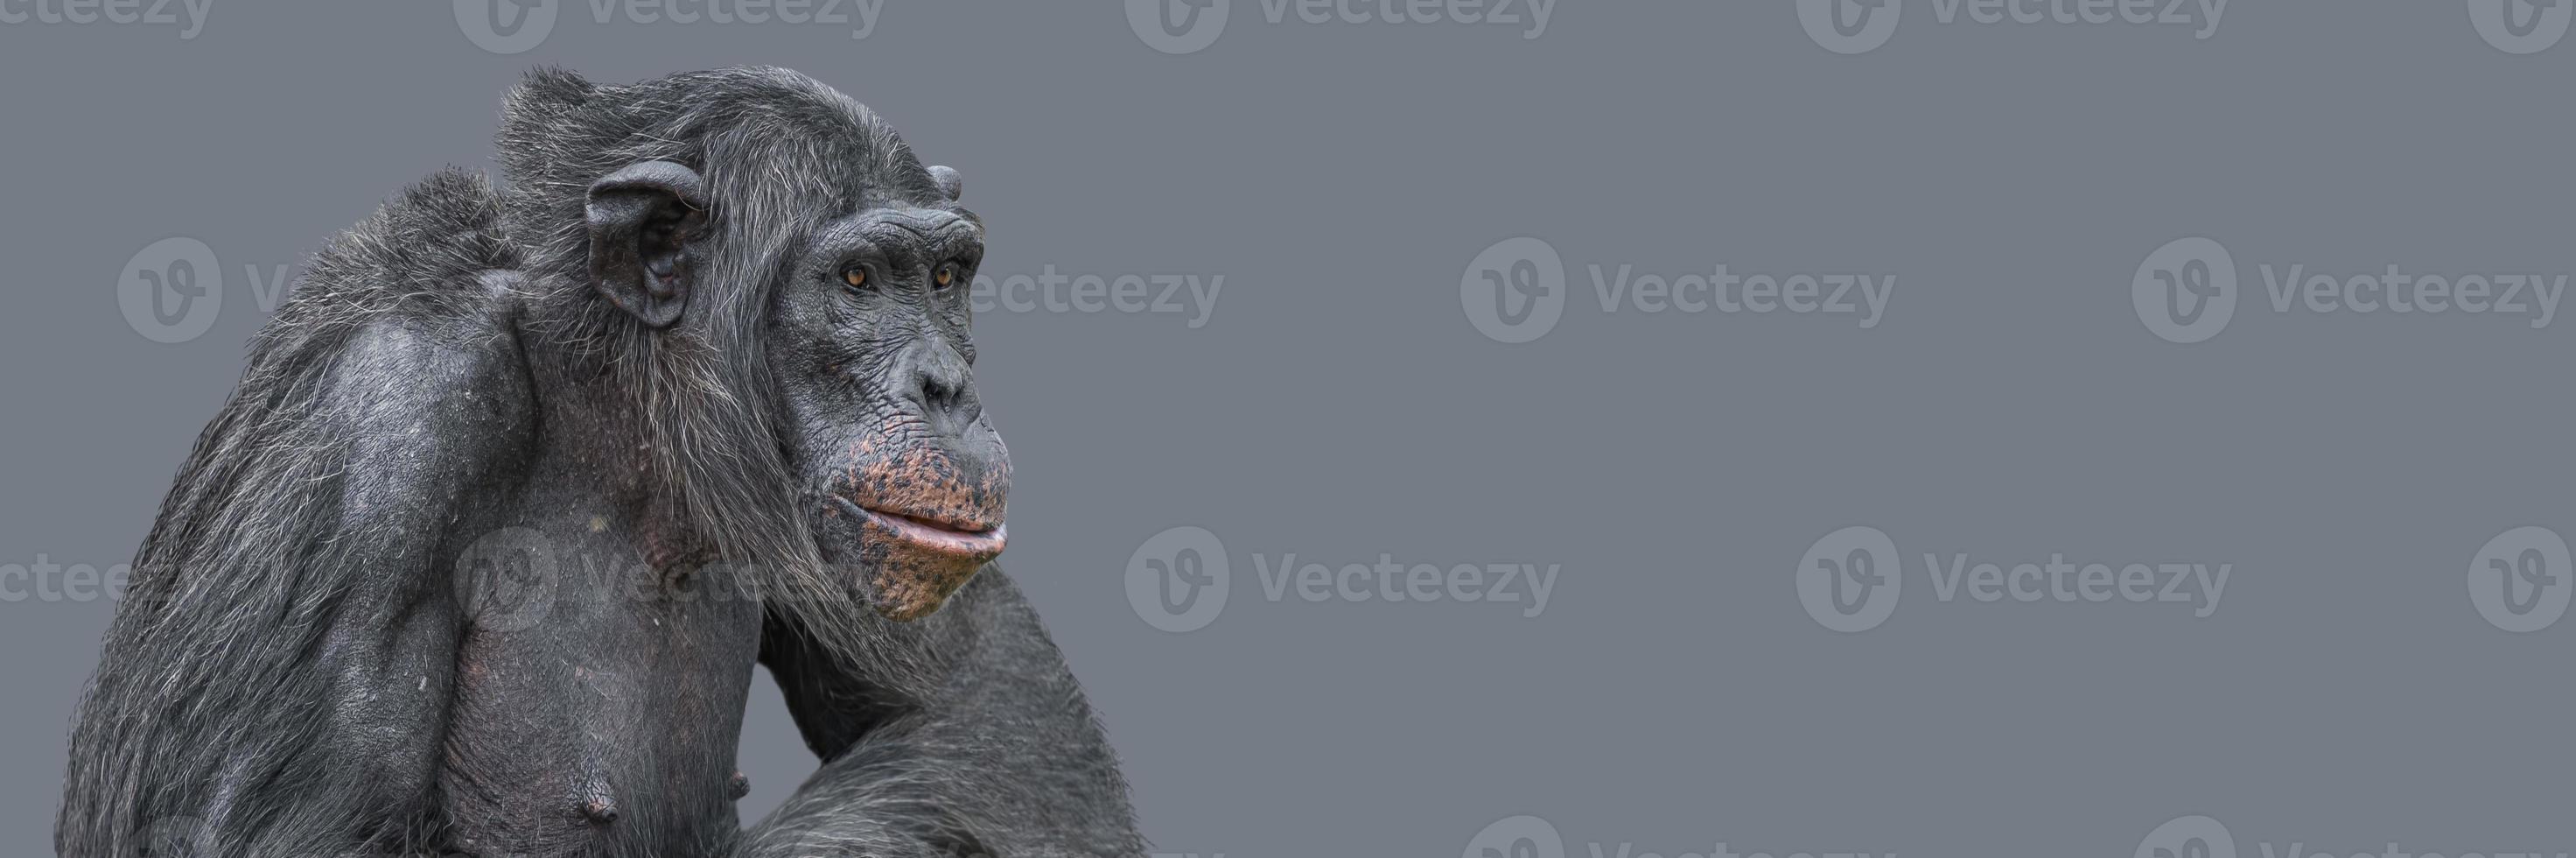 bannière avec un portrait de gros plan de chimpanzé à la recherche intelligente avec espace de copie et arrière-plan uni. concept de conservation de la faune, de la biodiversité et de l'intelligence animale. photo